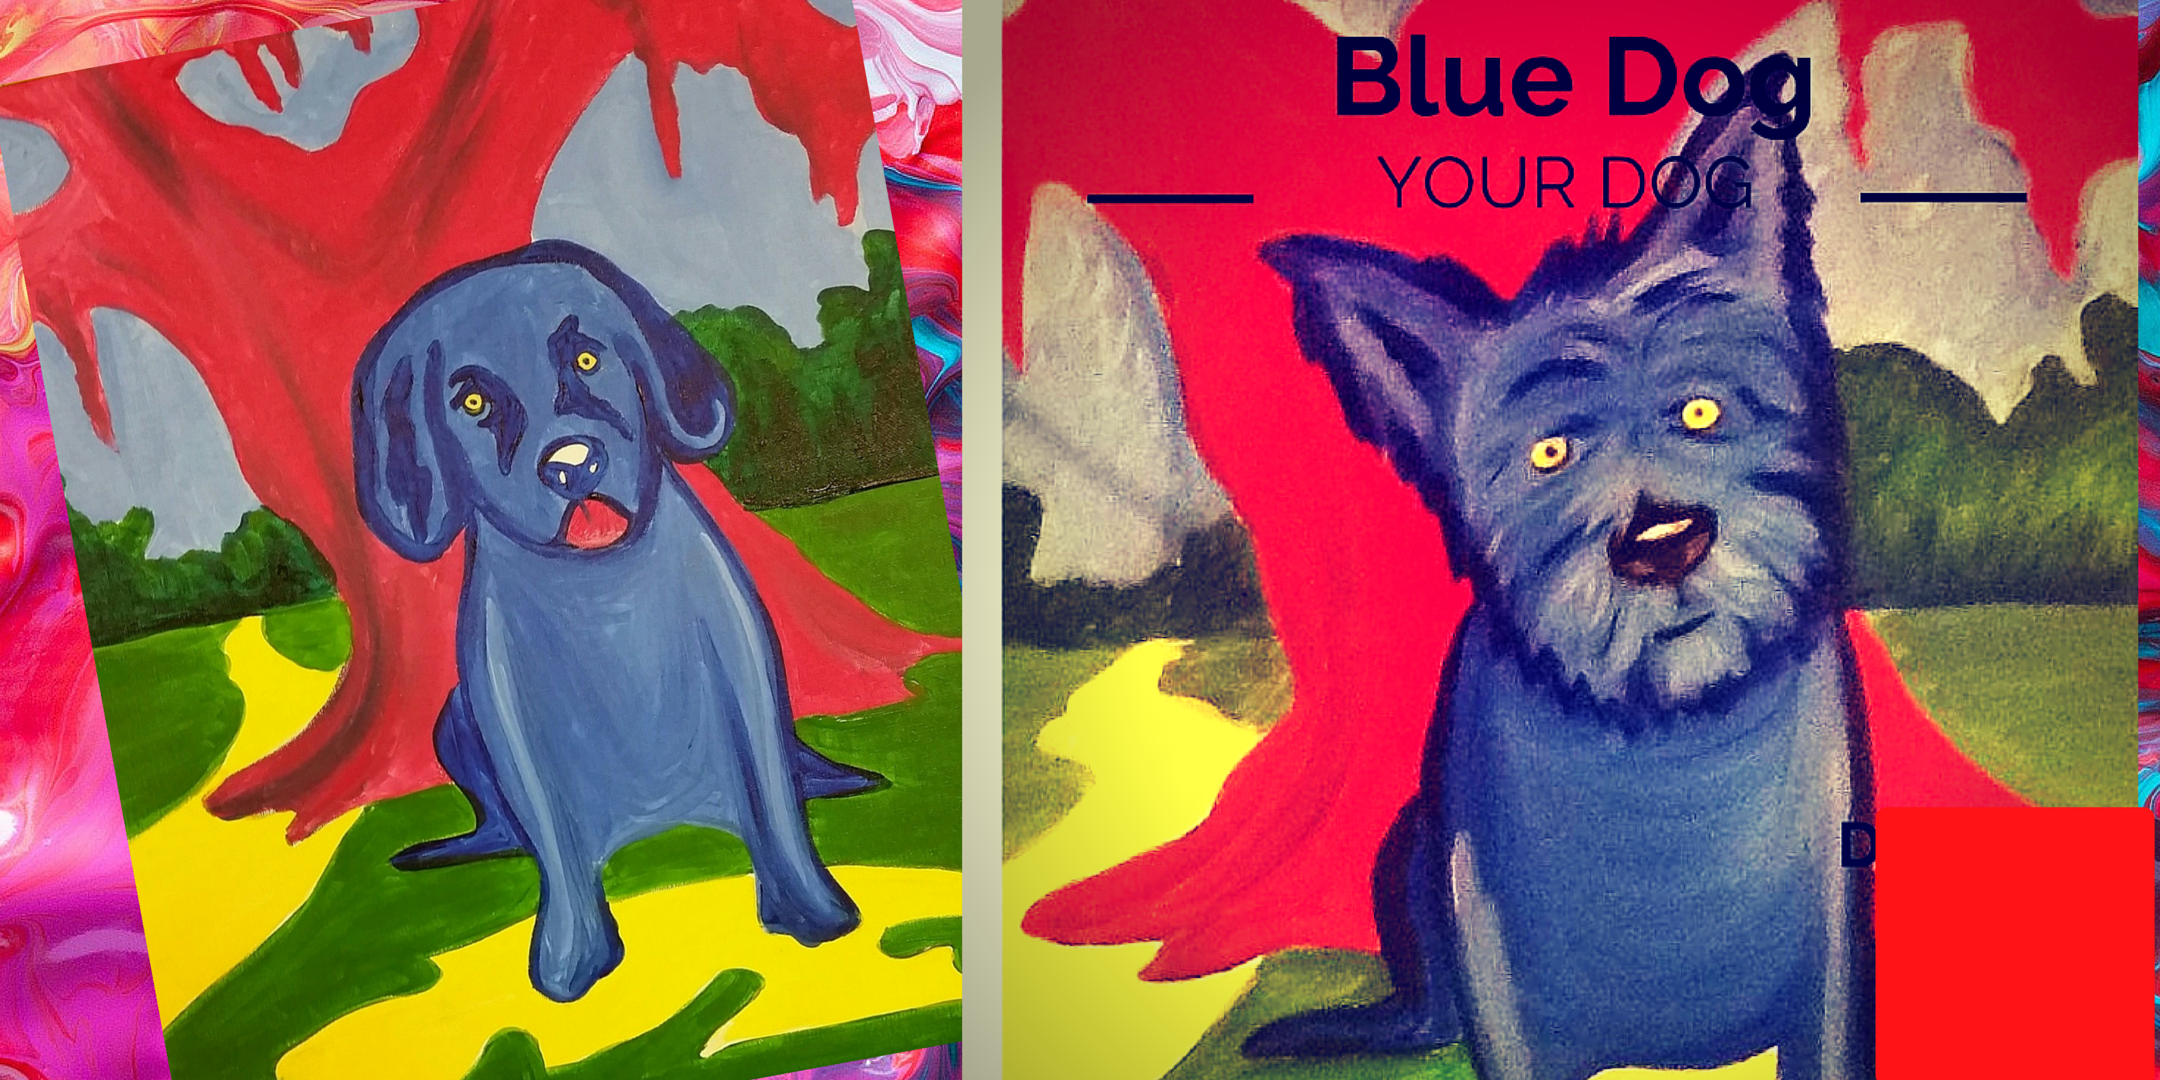 Blue Dog Your Dog